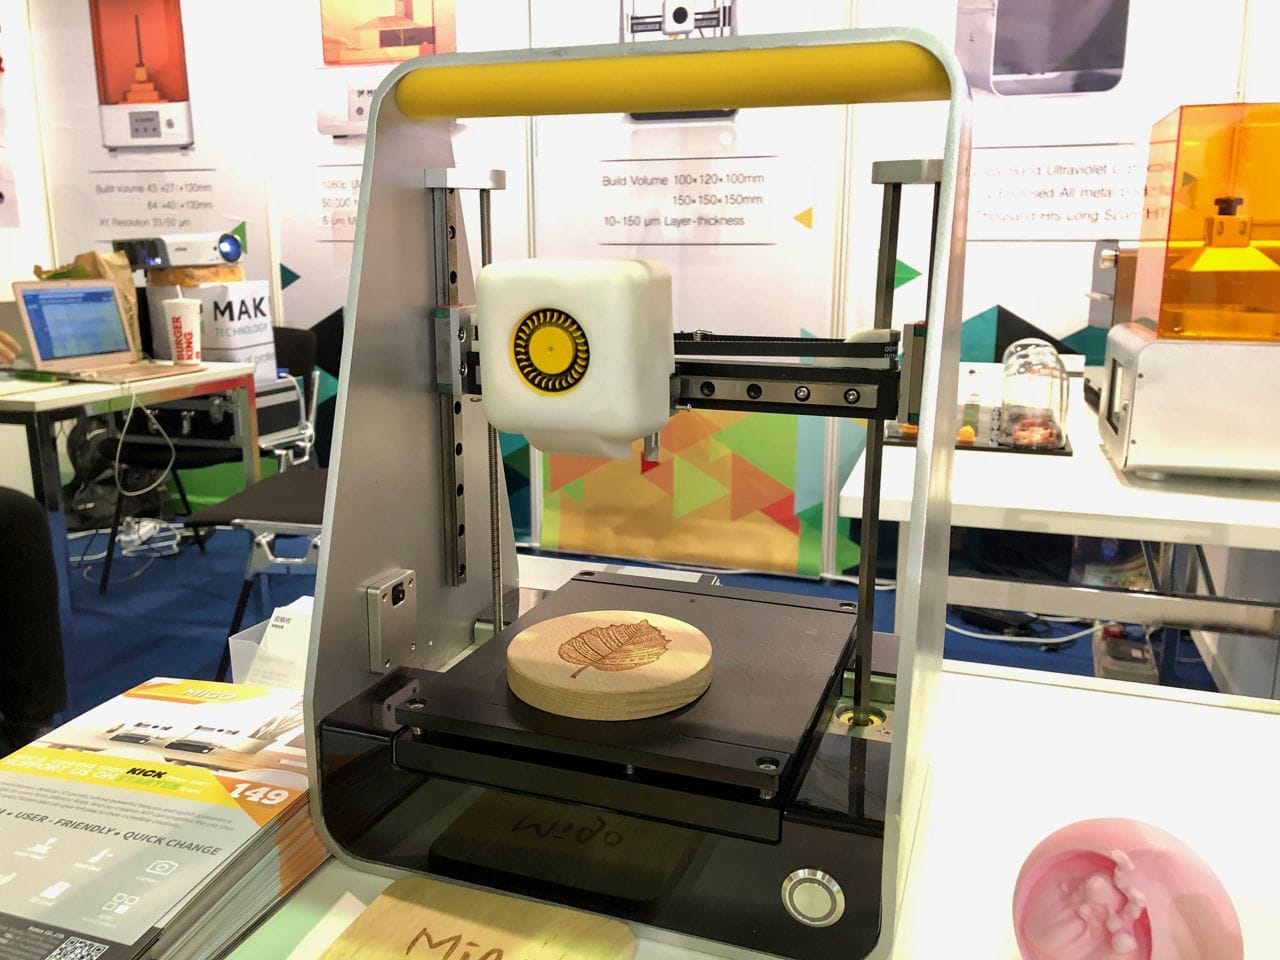  The MakeX Migo L portable desktop 3D printer, showing a laser engraved wood piece 